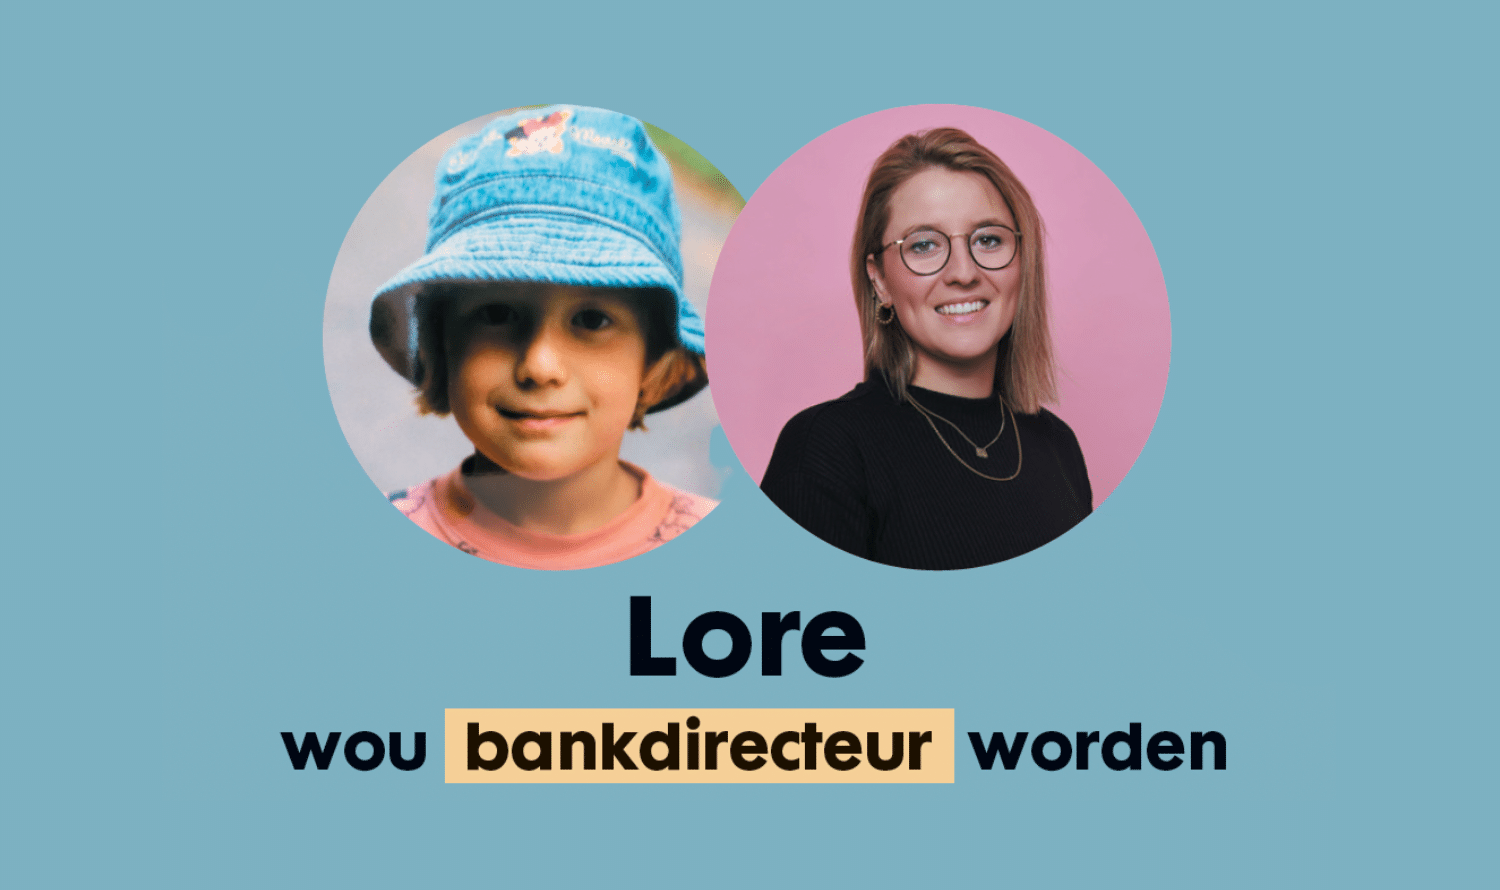 Lore wou bankdirecteur worden